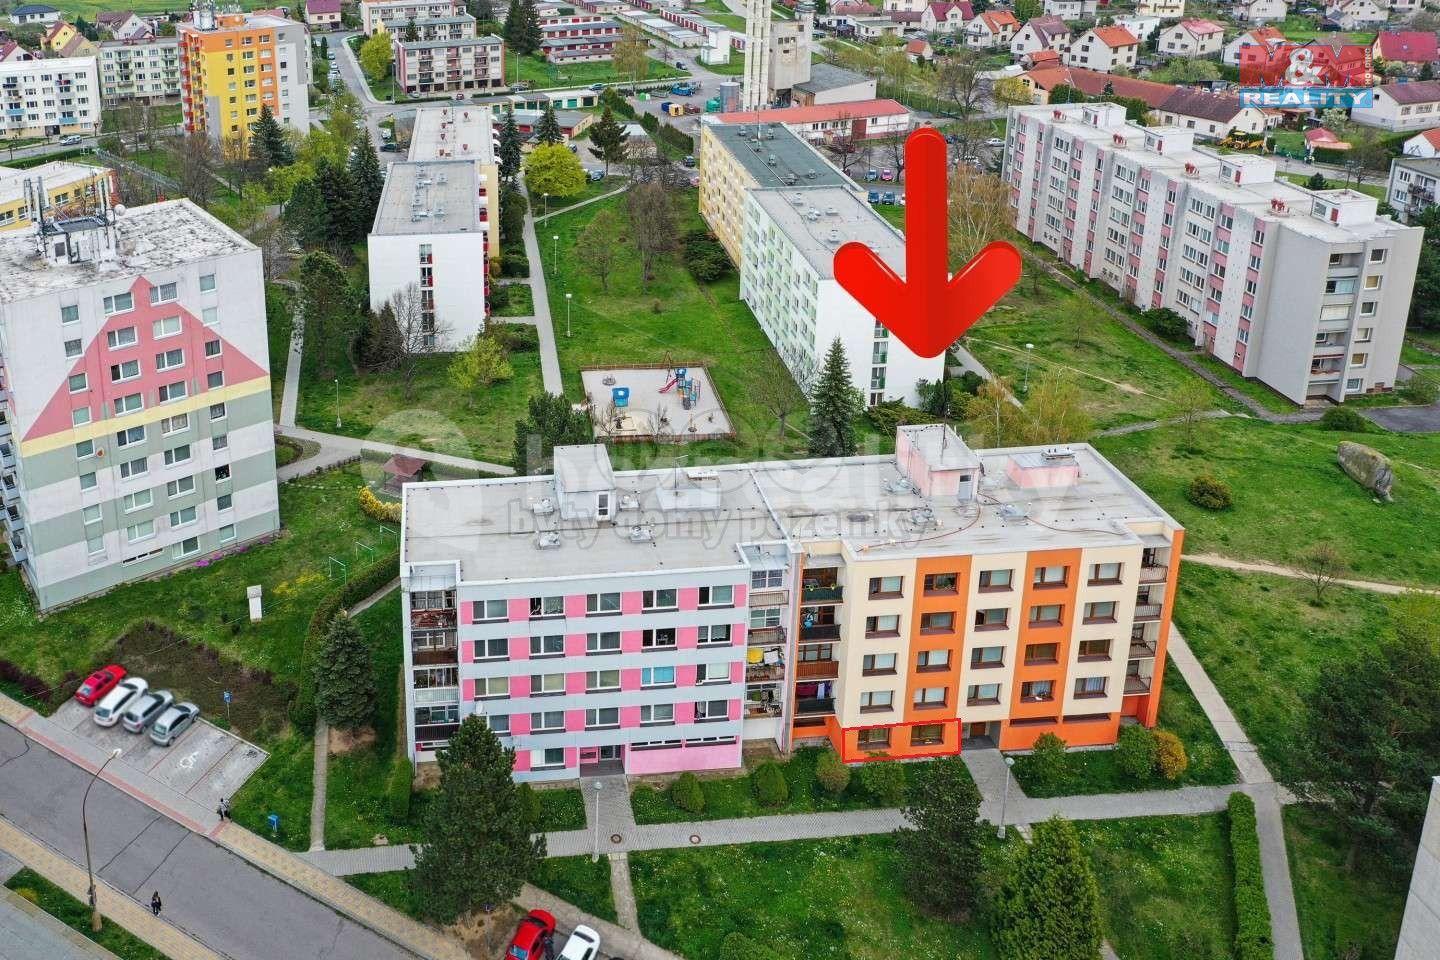 3 bedroom flat for sale, 72 m², Na Bílé husi, Blatná, Jihočeský Region